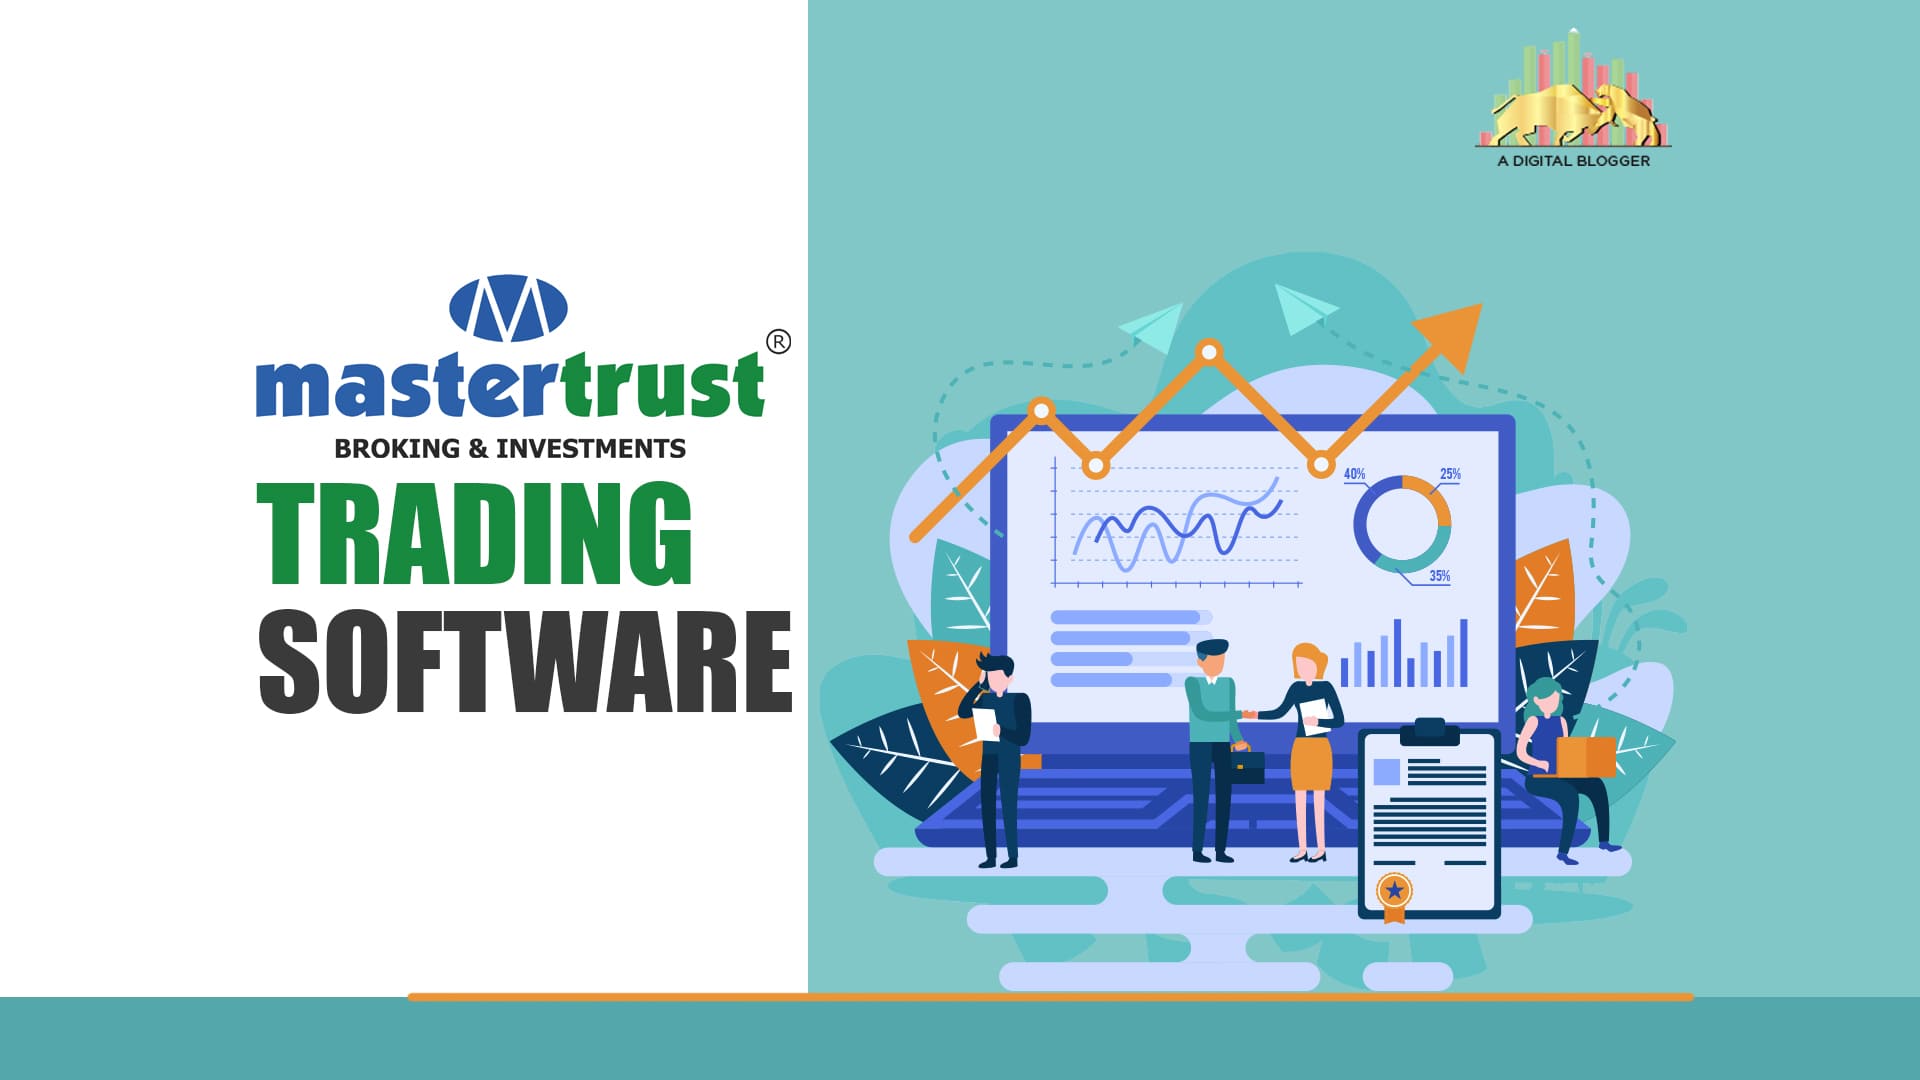 Mastertrust Trading Software| Platform, Online, Mobile ...